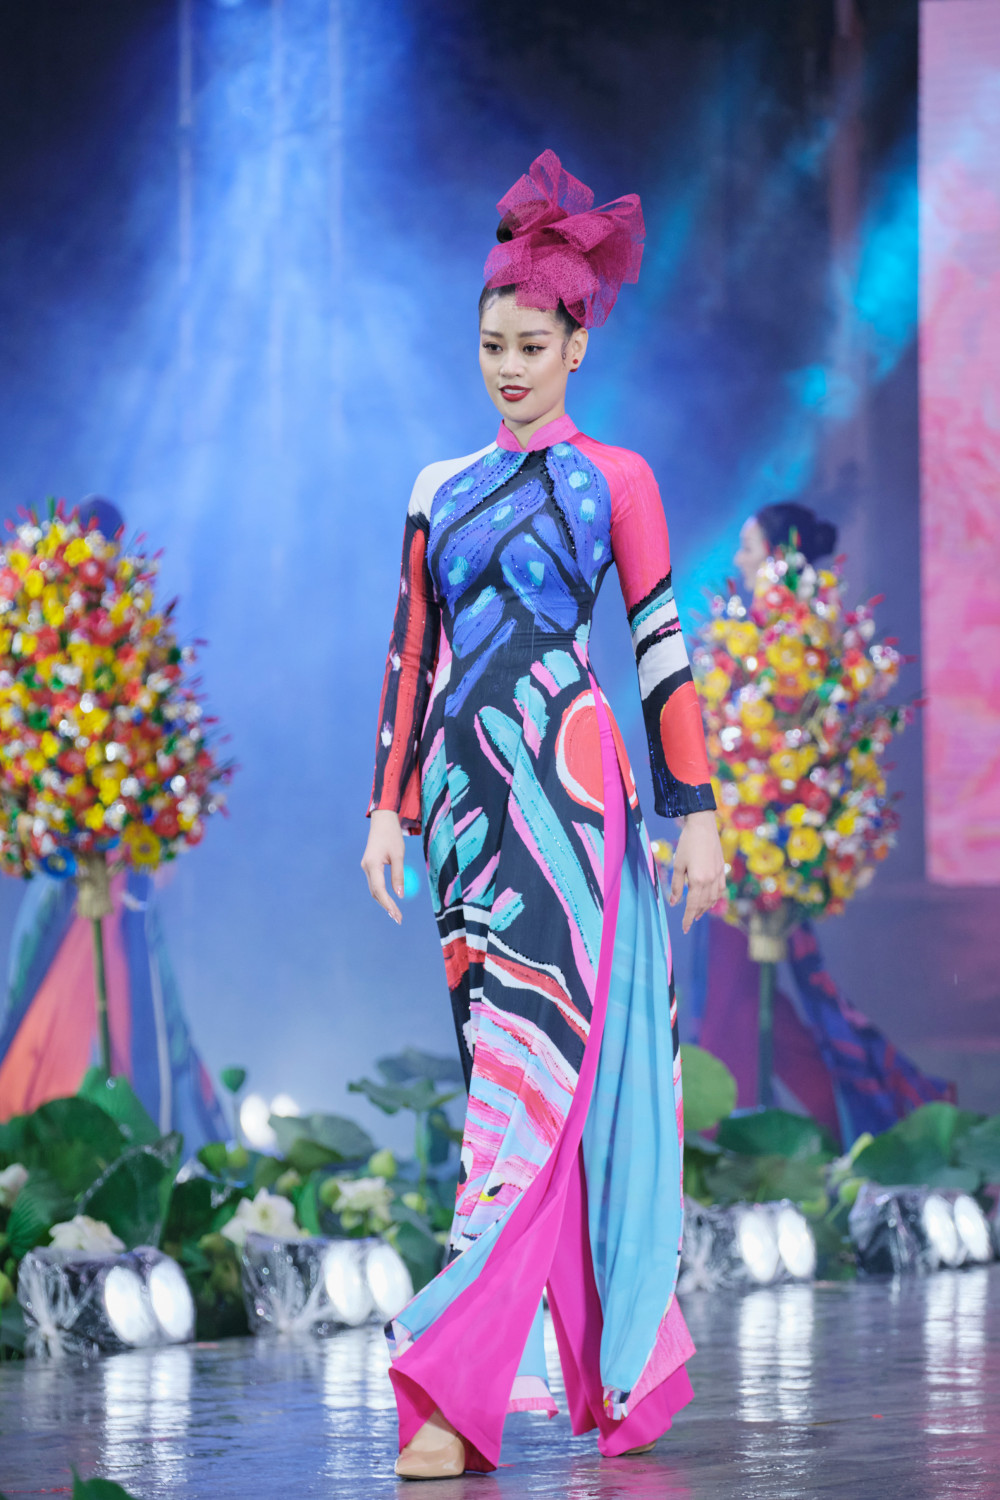 Hoa hậu Hoàn vũ Việt Nam 2019 Khánh Vân là một trong những đại sứ của Lễ hội Áo dài TPHCM 2020. Trong đêm khai mạc lễ hội vào tối 11/10, người đẹp trình diễn với vị trí mở màn cho BST của NTK Liên Hương.